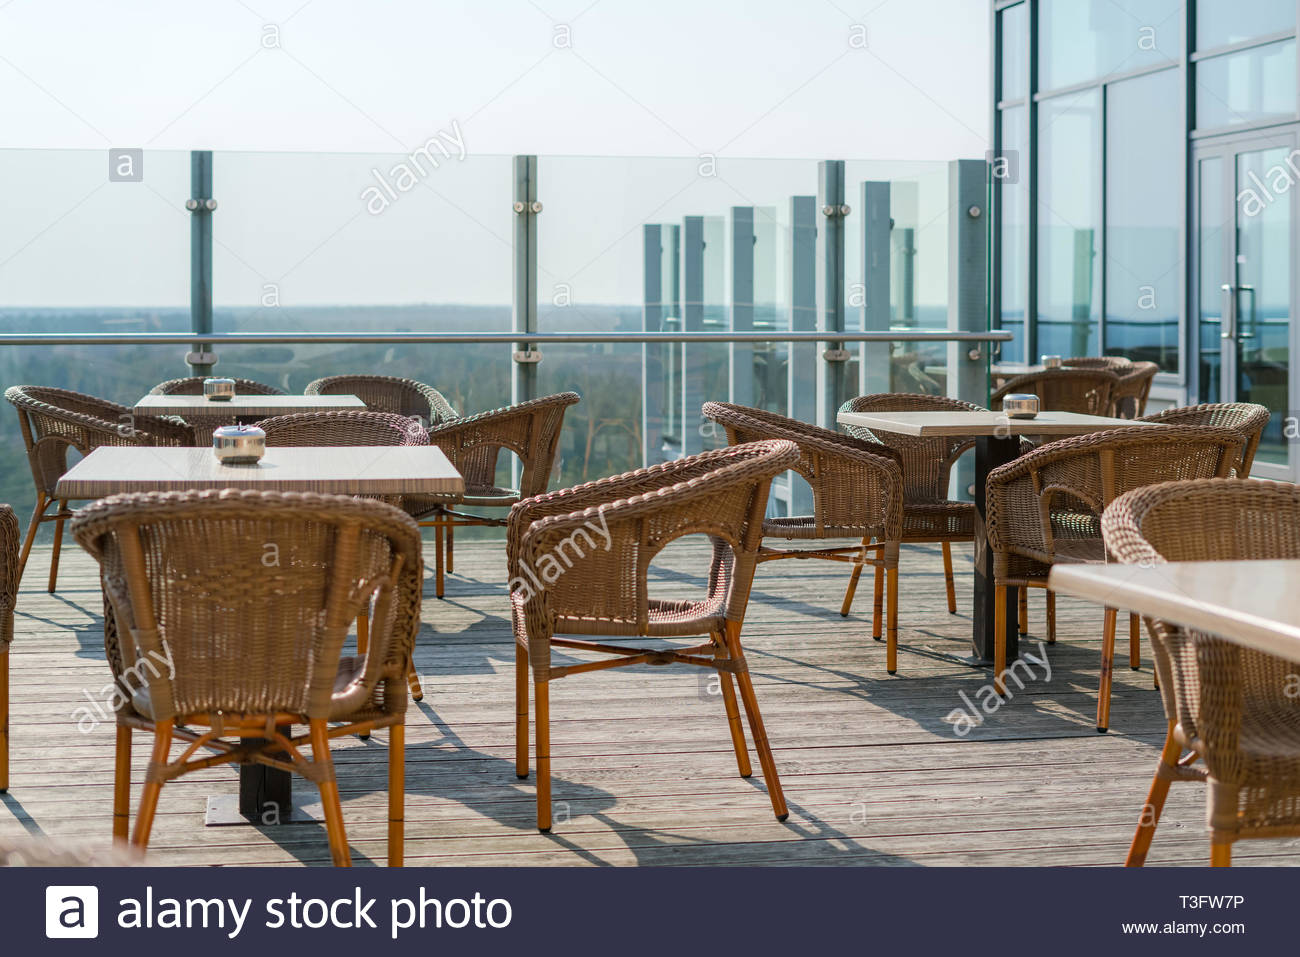 cafe vide avec des fauteuils en osier et en rotin tables sur jardin d ete terrasse exterieur l espace libre table et chaises de cafe vide meubles en rotin t3fw7p